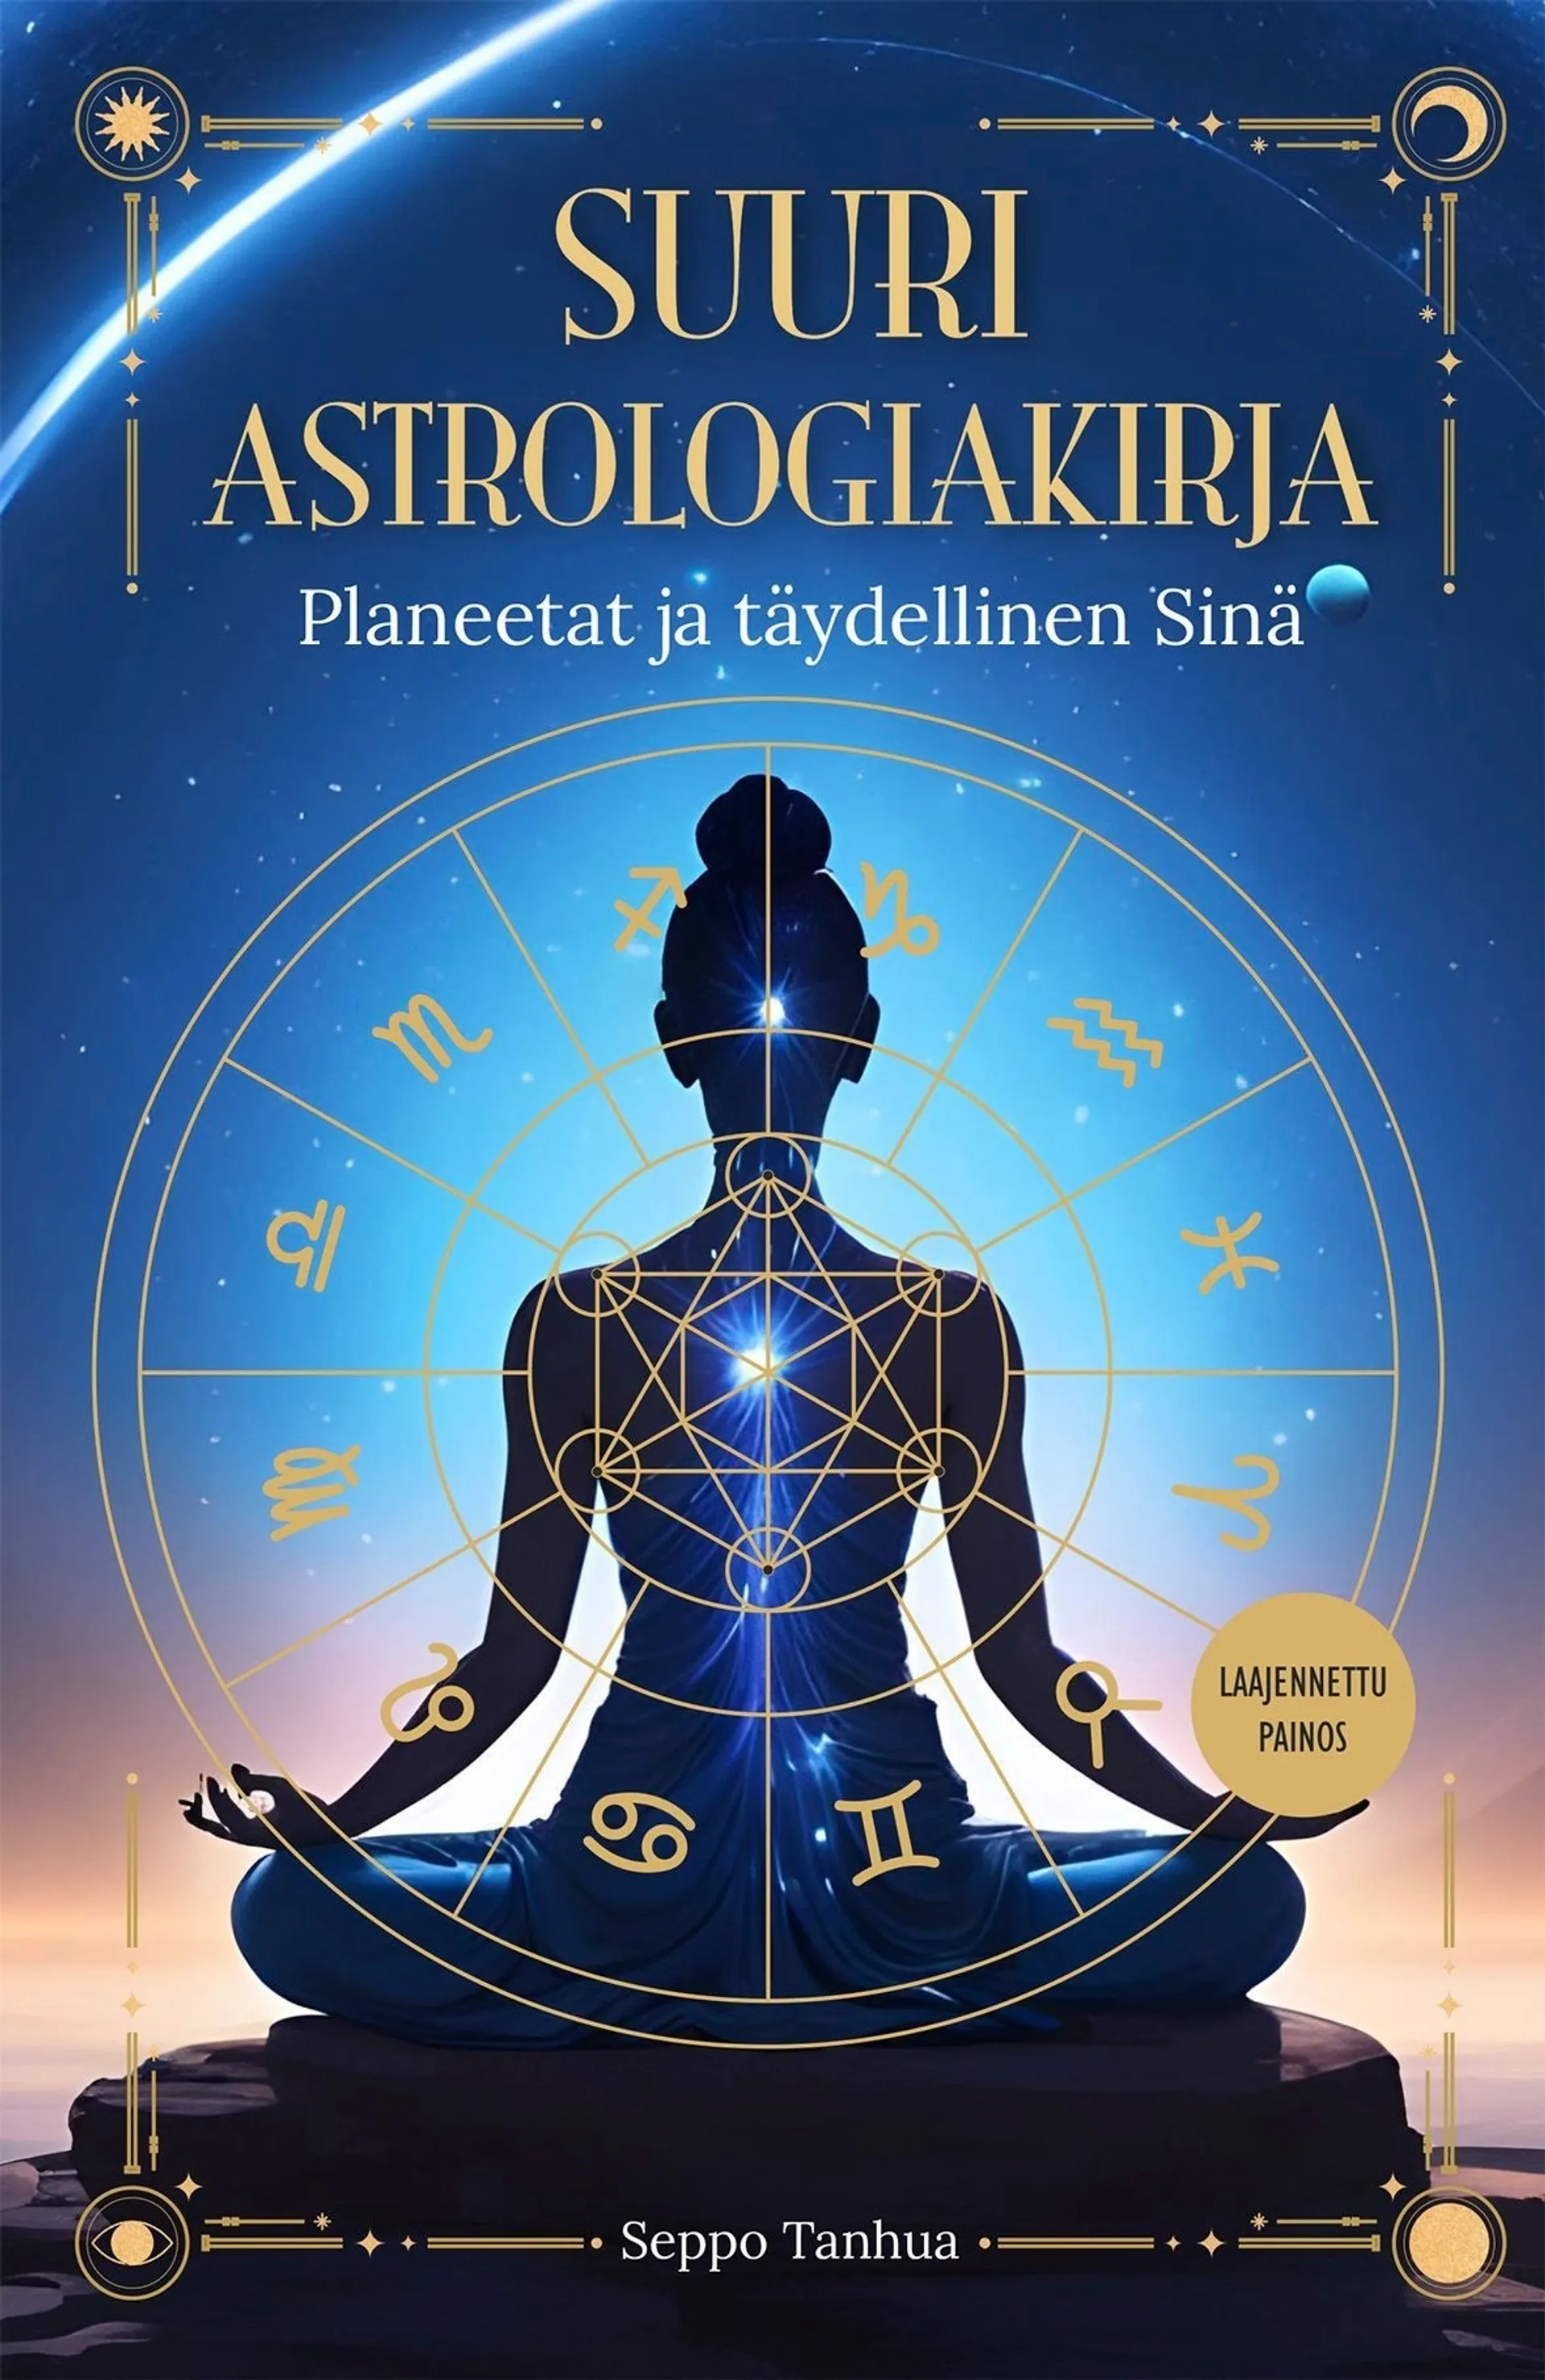 Tanhua, Suuri astrologiakirja - Planeetat ja täydellinen sinä  - Laajennettu painos